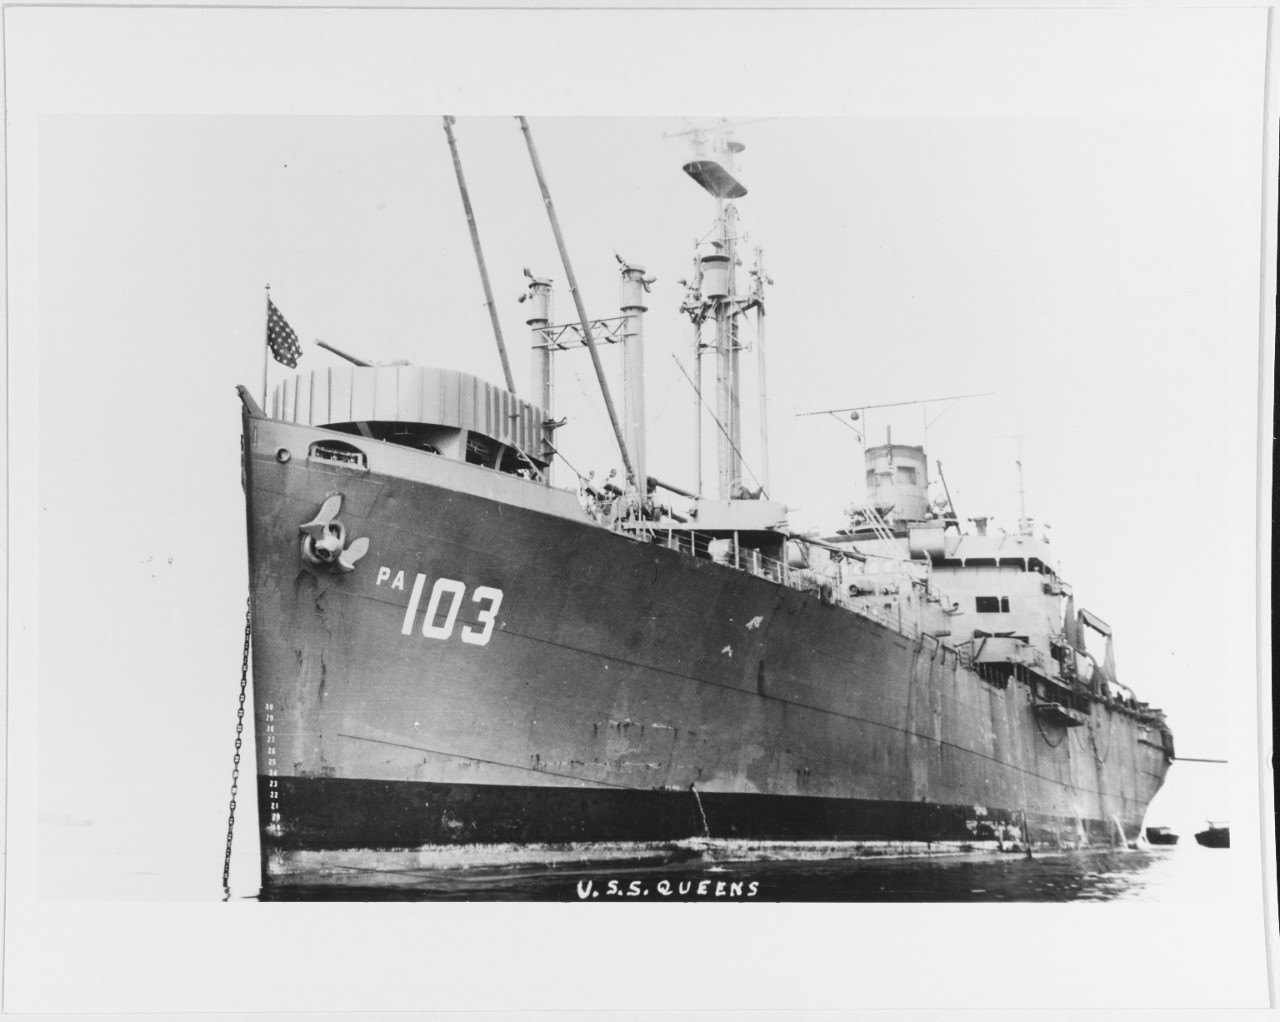 USS GUEENS (APA-103)